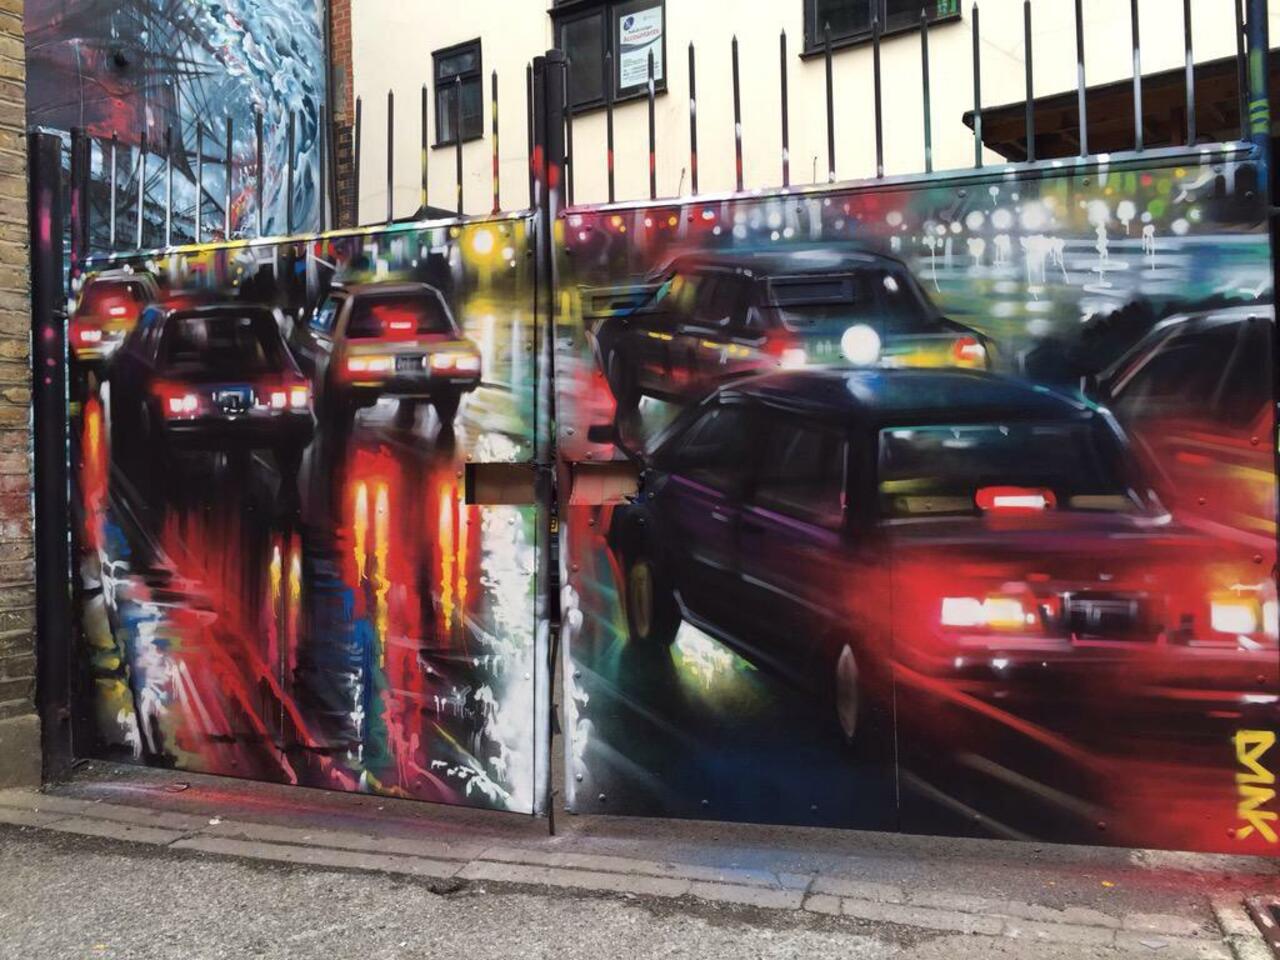 New Street Art by DanKitchener in Brick Lane London 

#art #graffiti #mural #streetart http://t.co/Fi3OYGkZEL